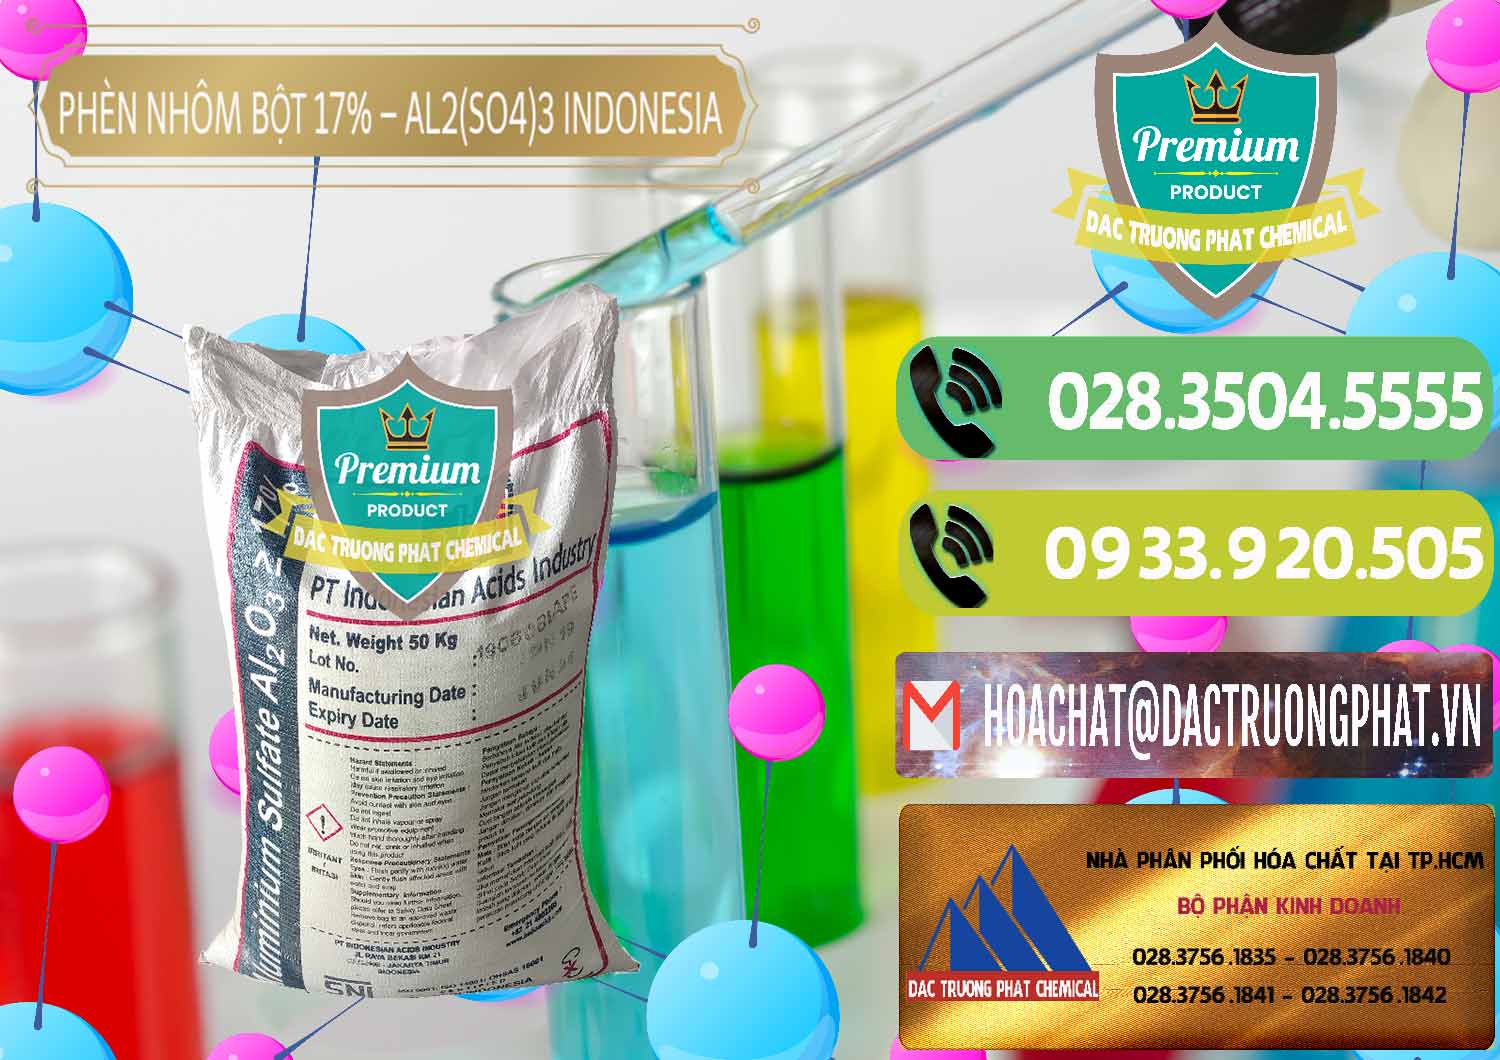 Cty bán _ phân phối Phèn Nhôm Bột - Al2(SO4)3 17% bao 50kg Indonesia - 0112 - Nơi chuyên cung cấp - kinh doanh hóa chất tại TP.HCM - hoachatmientay.vn